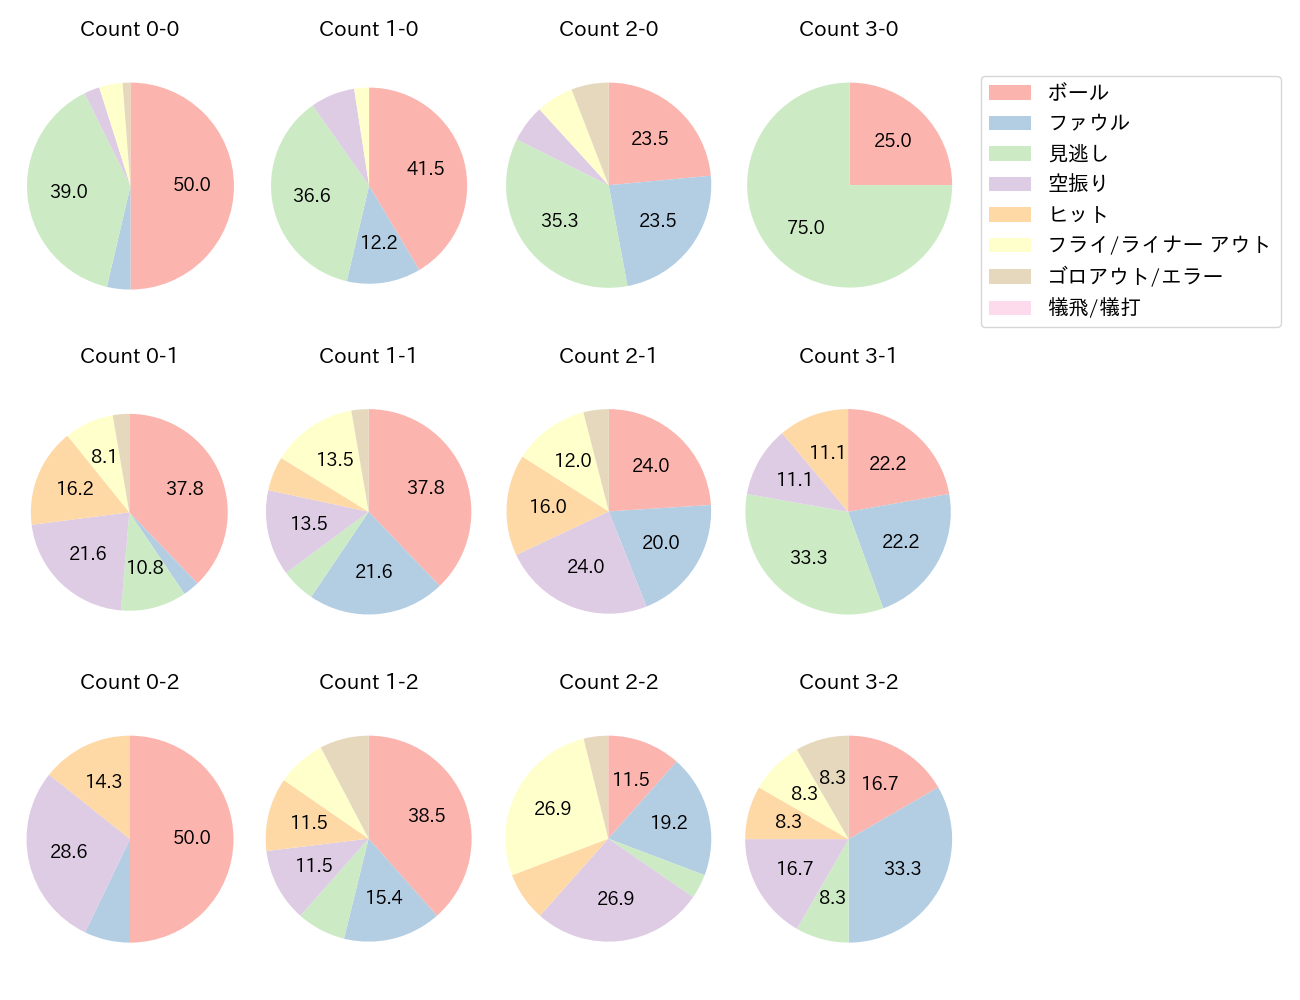 山田 哲人の球数分布(2023年5月)